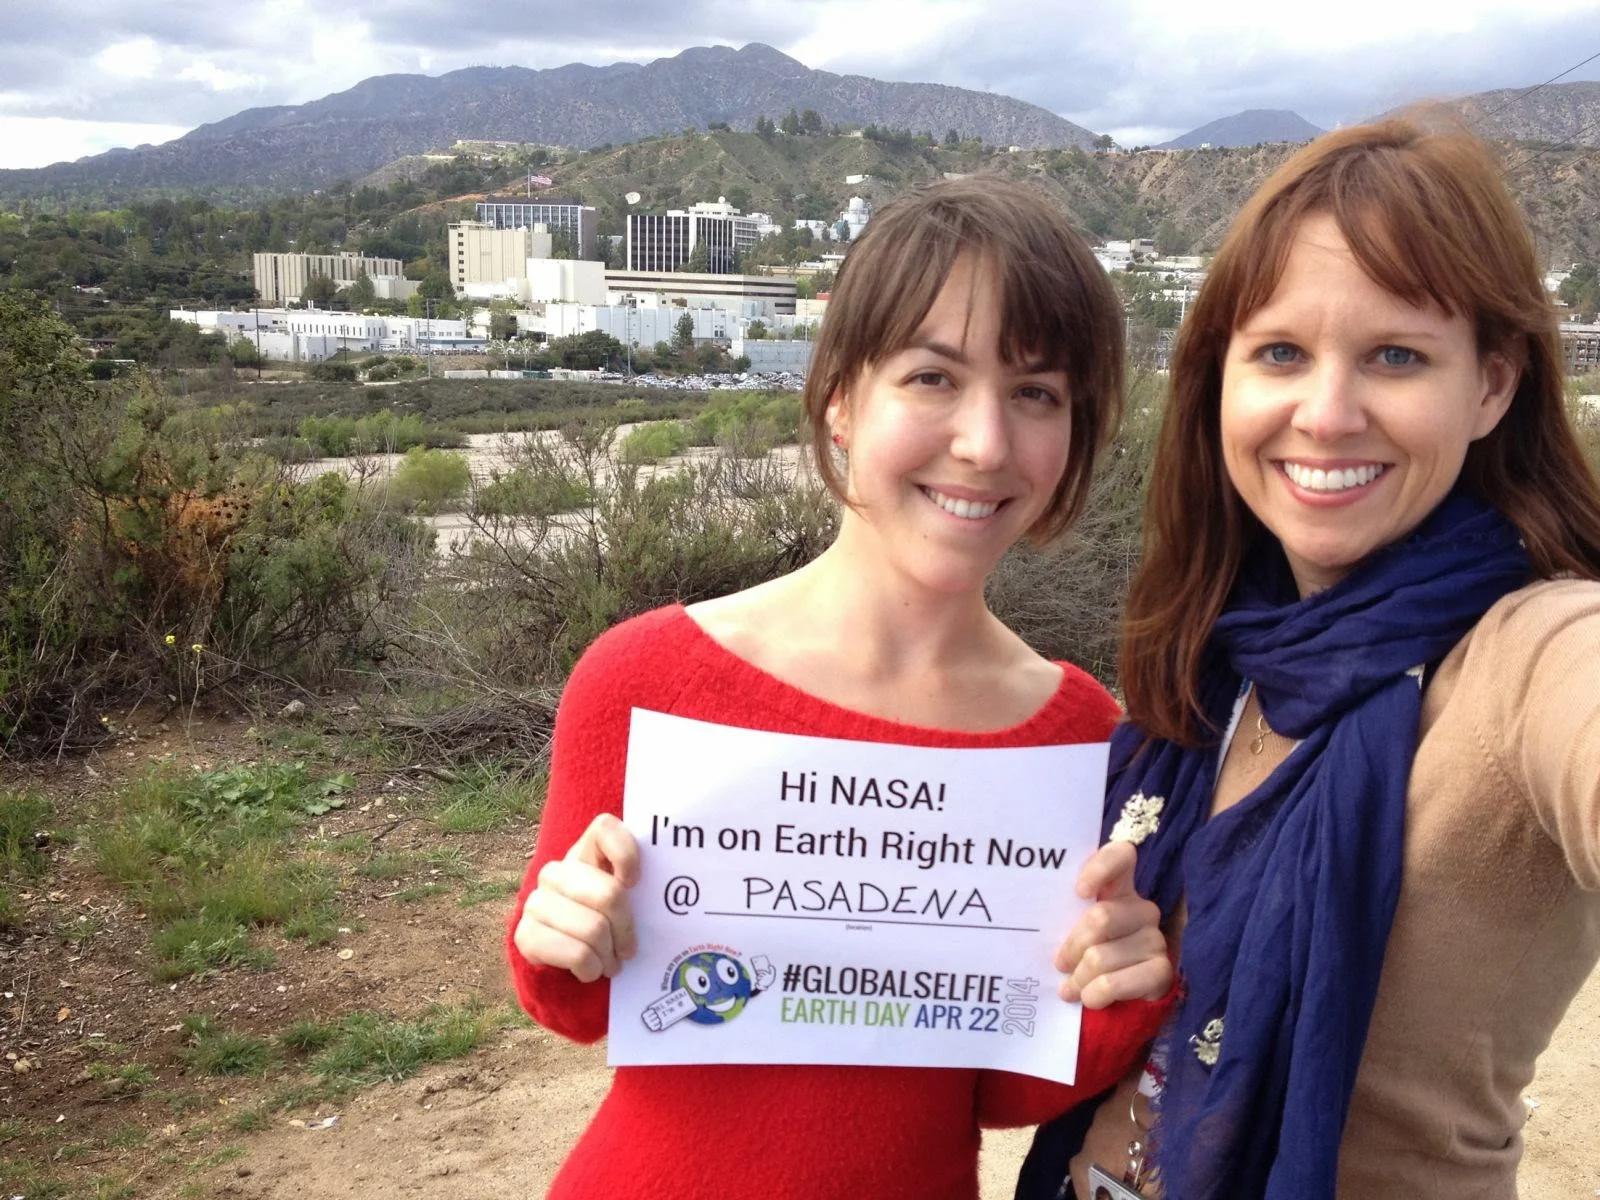 Menyambut Hari Bumi, NASA Menyelenggarakan Global Selfie